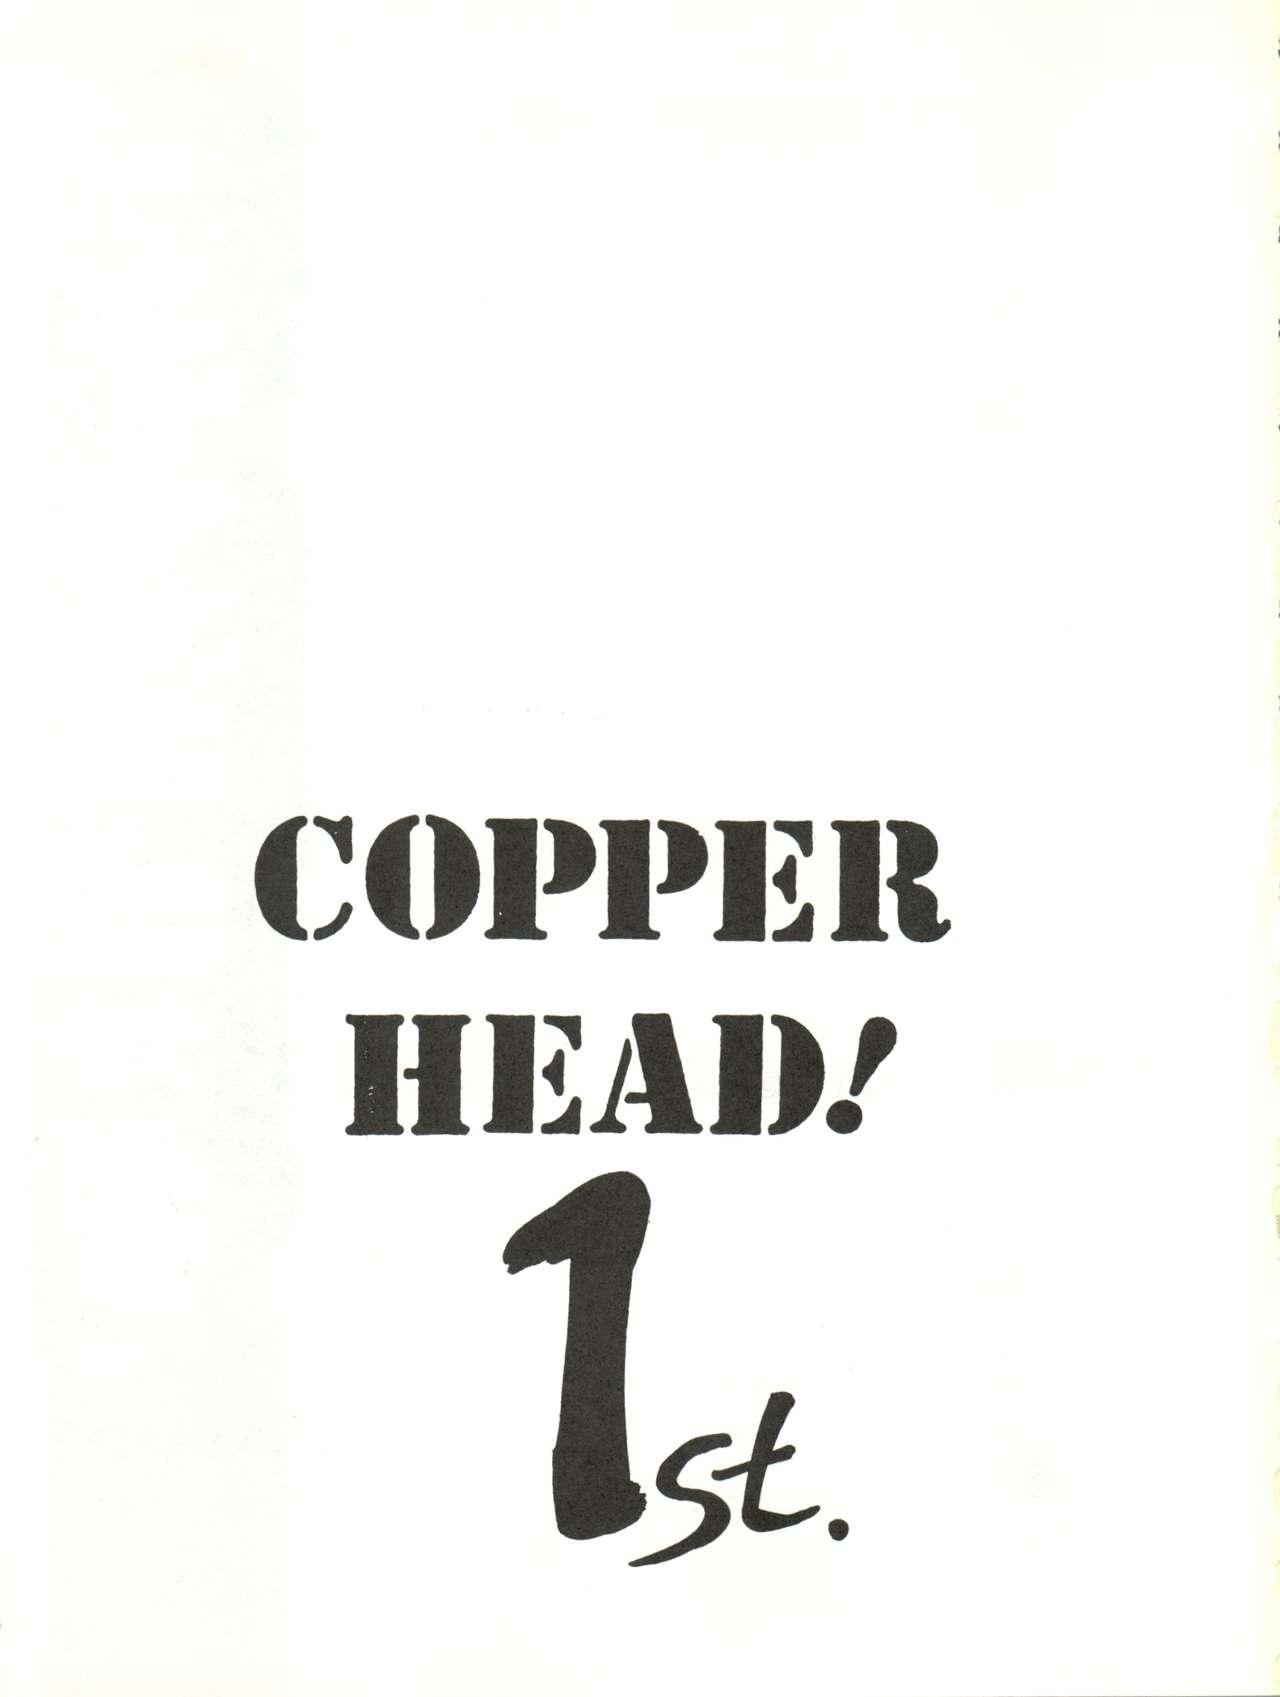 Copper Head! 2